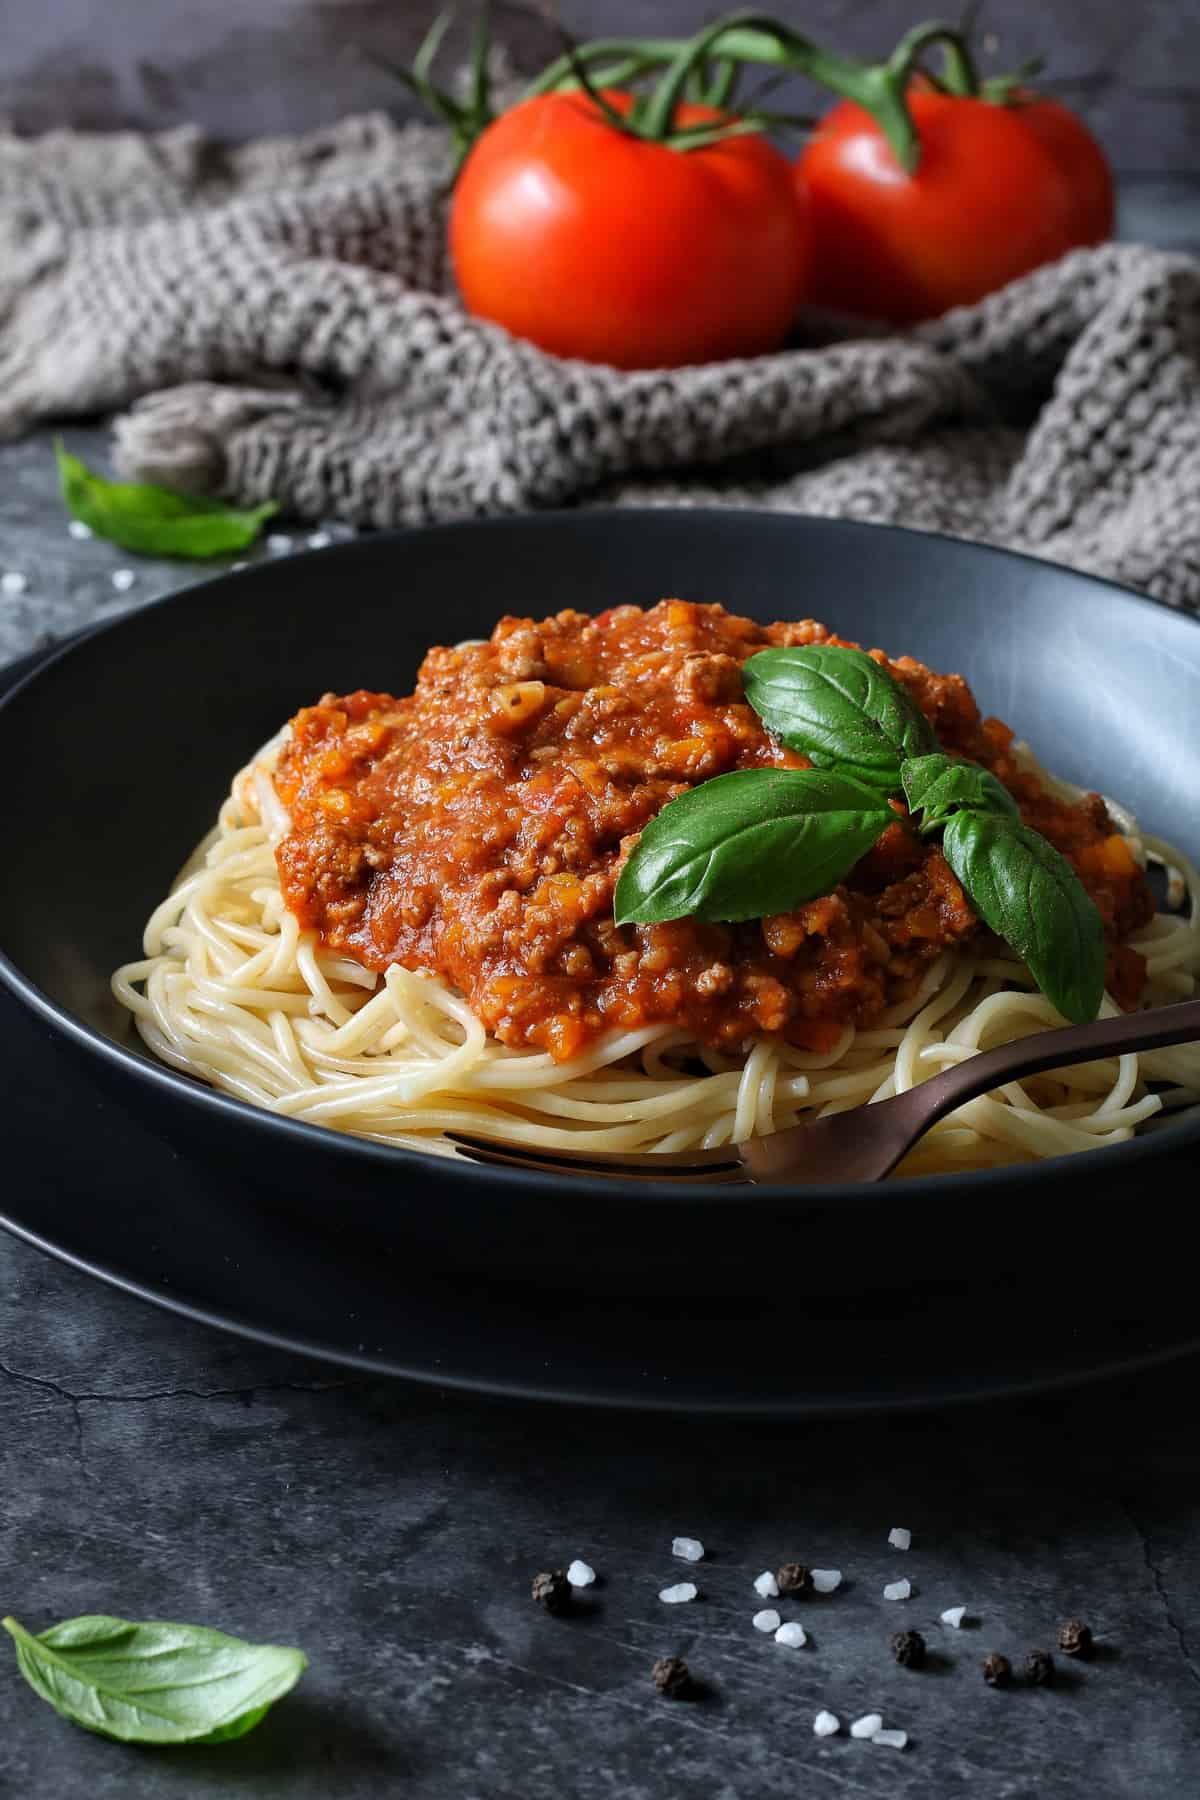 Spaghetti Bolognese aus dem Thermomix® in einem tiefen Teller, mit Basilikum garniert. Im Vordergrund liegen Salz und Pfefferkörner auf dunkelgrauem Untergrund.